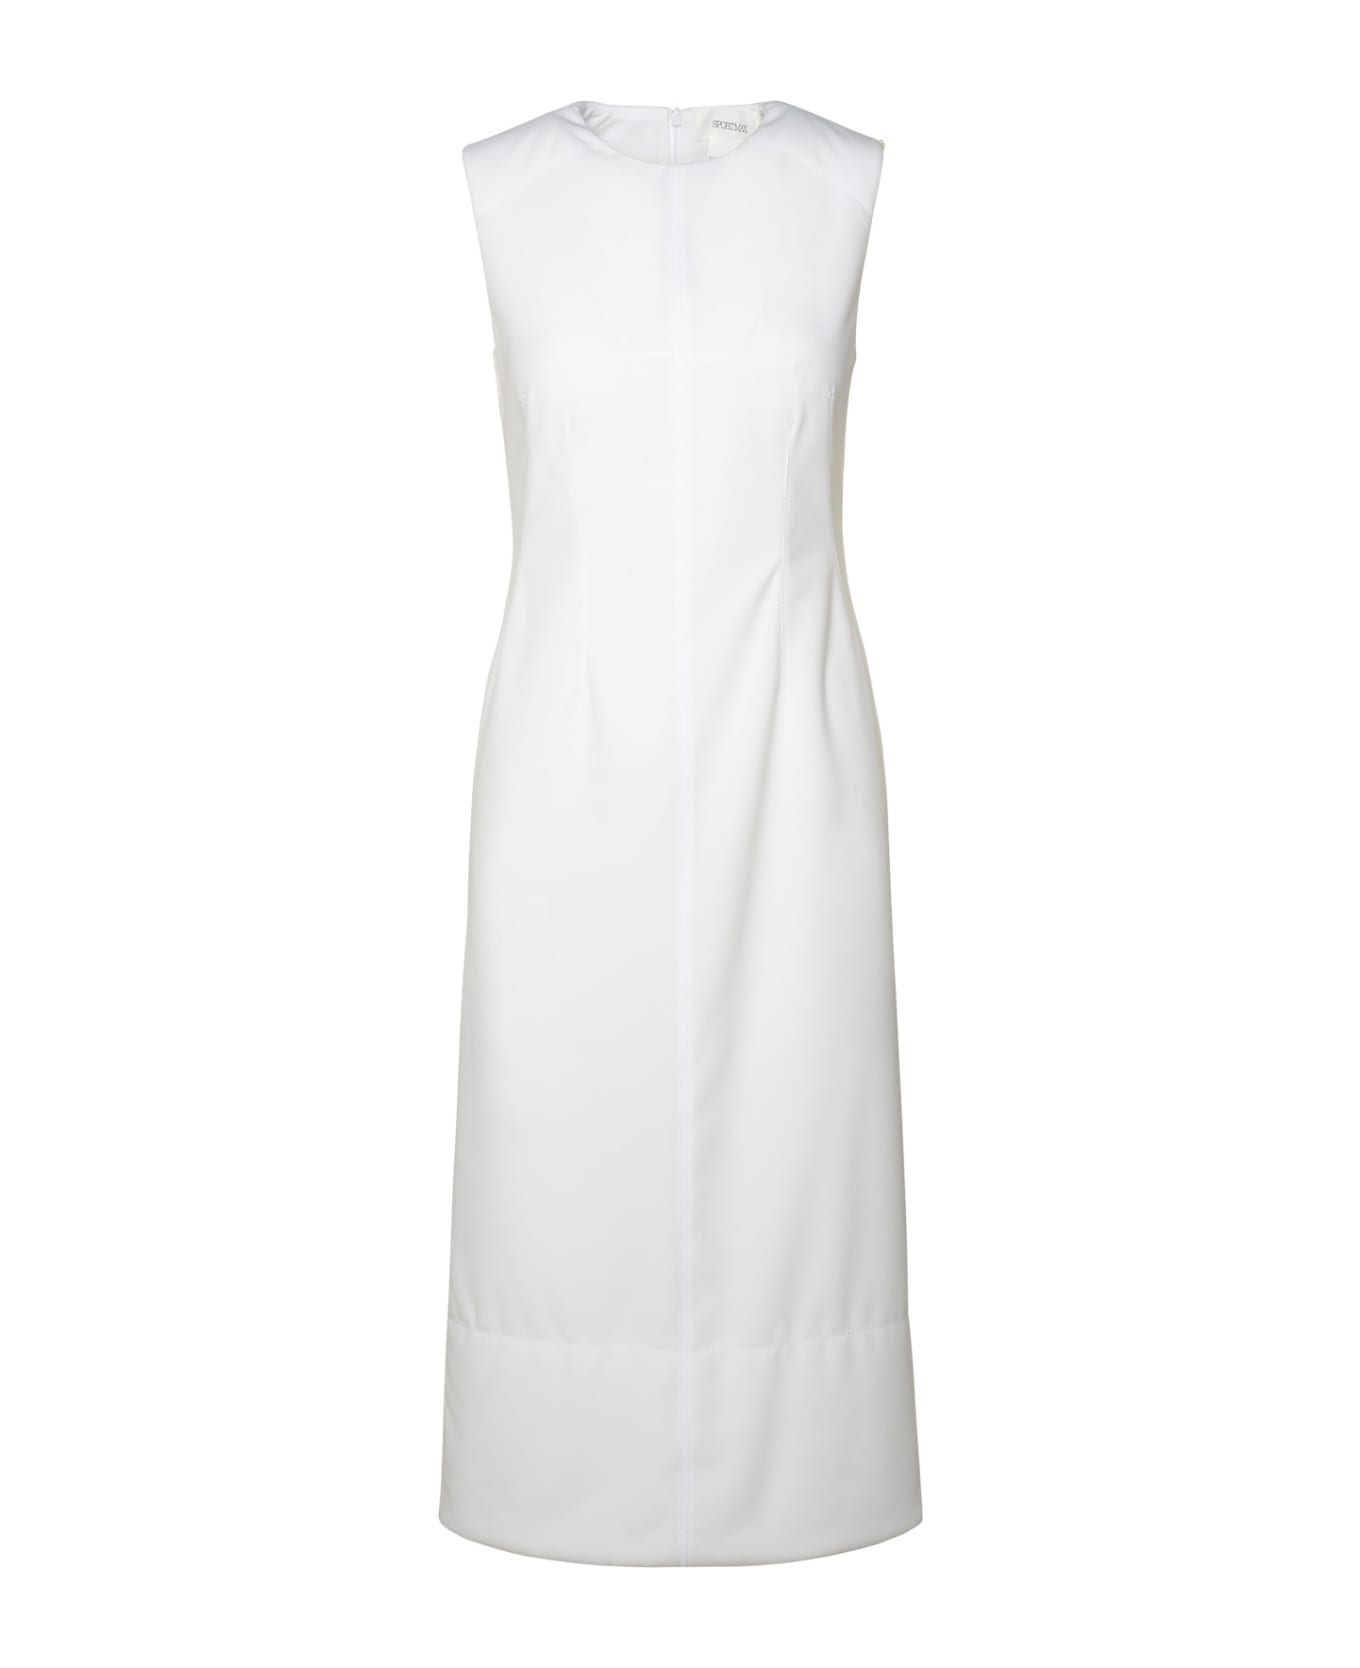 SportMax 'cariddi' White Polyester Dress - White